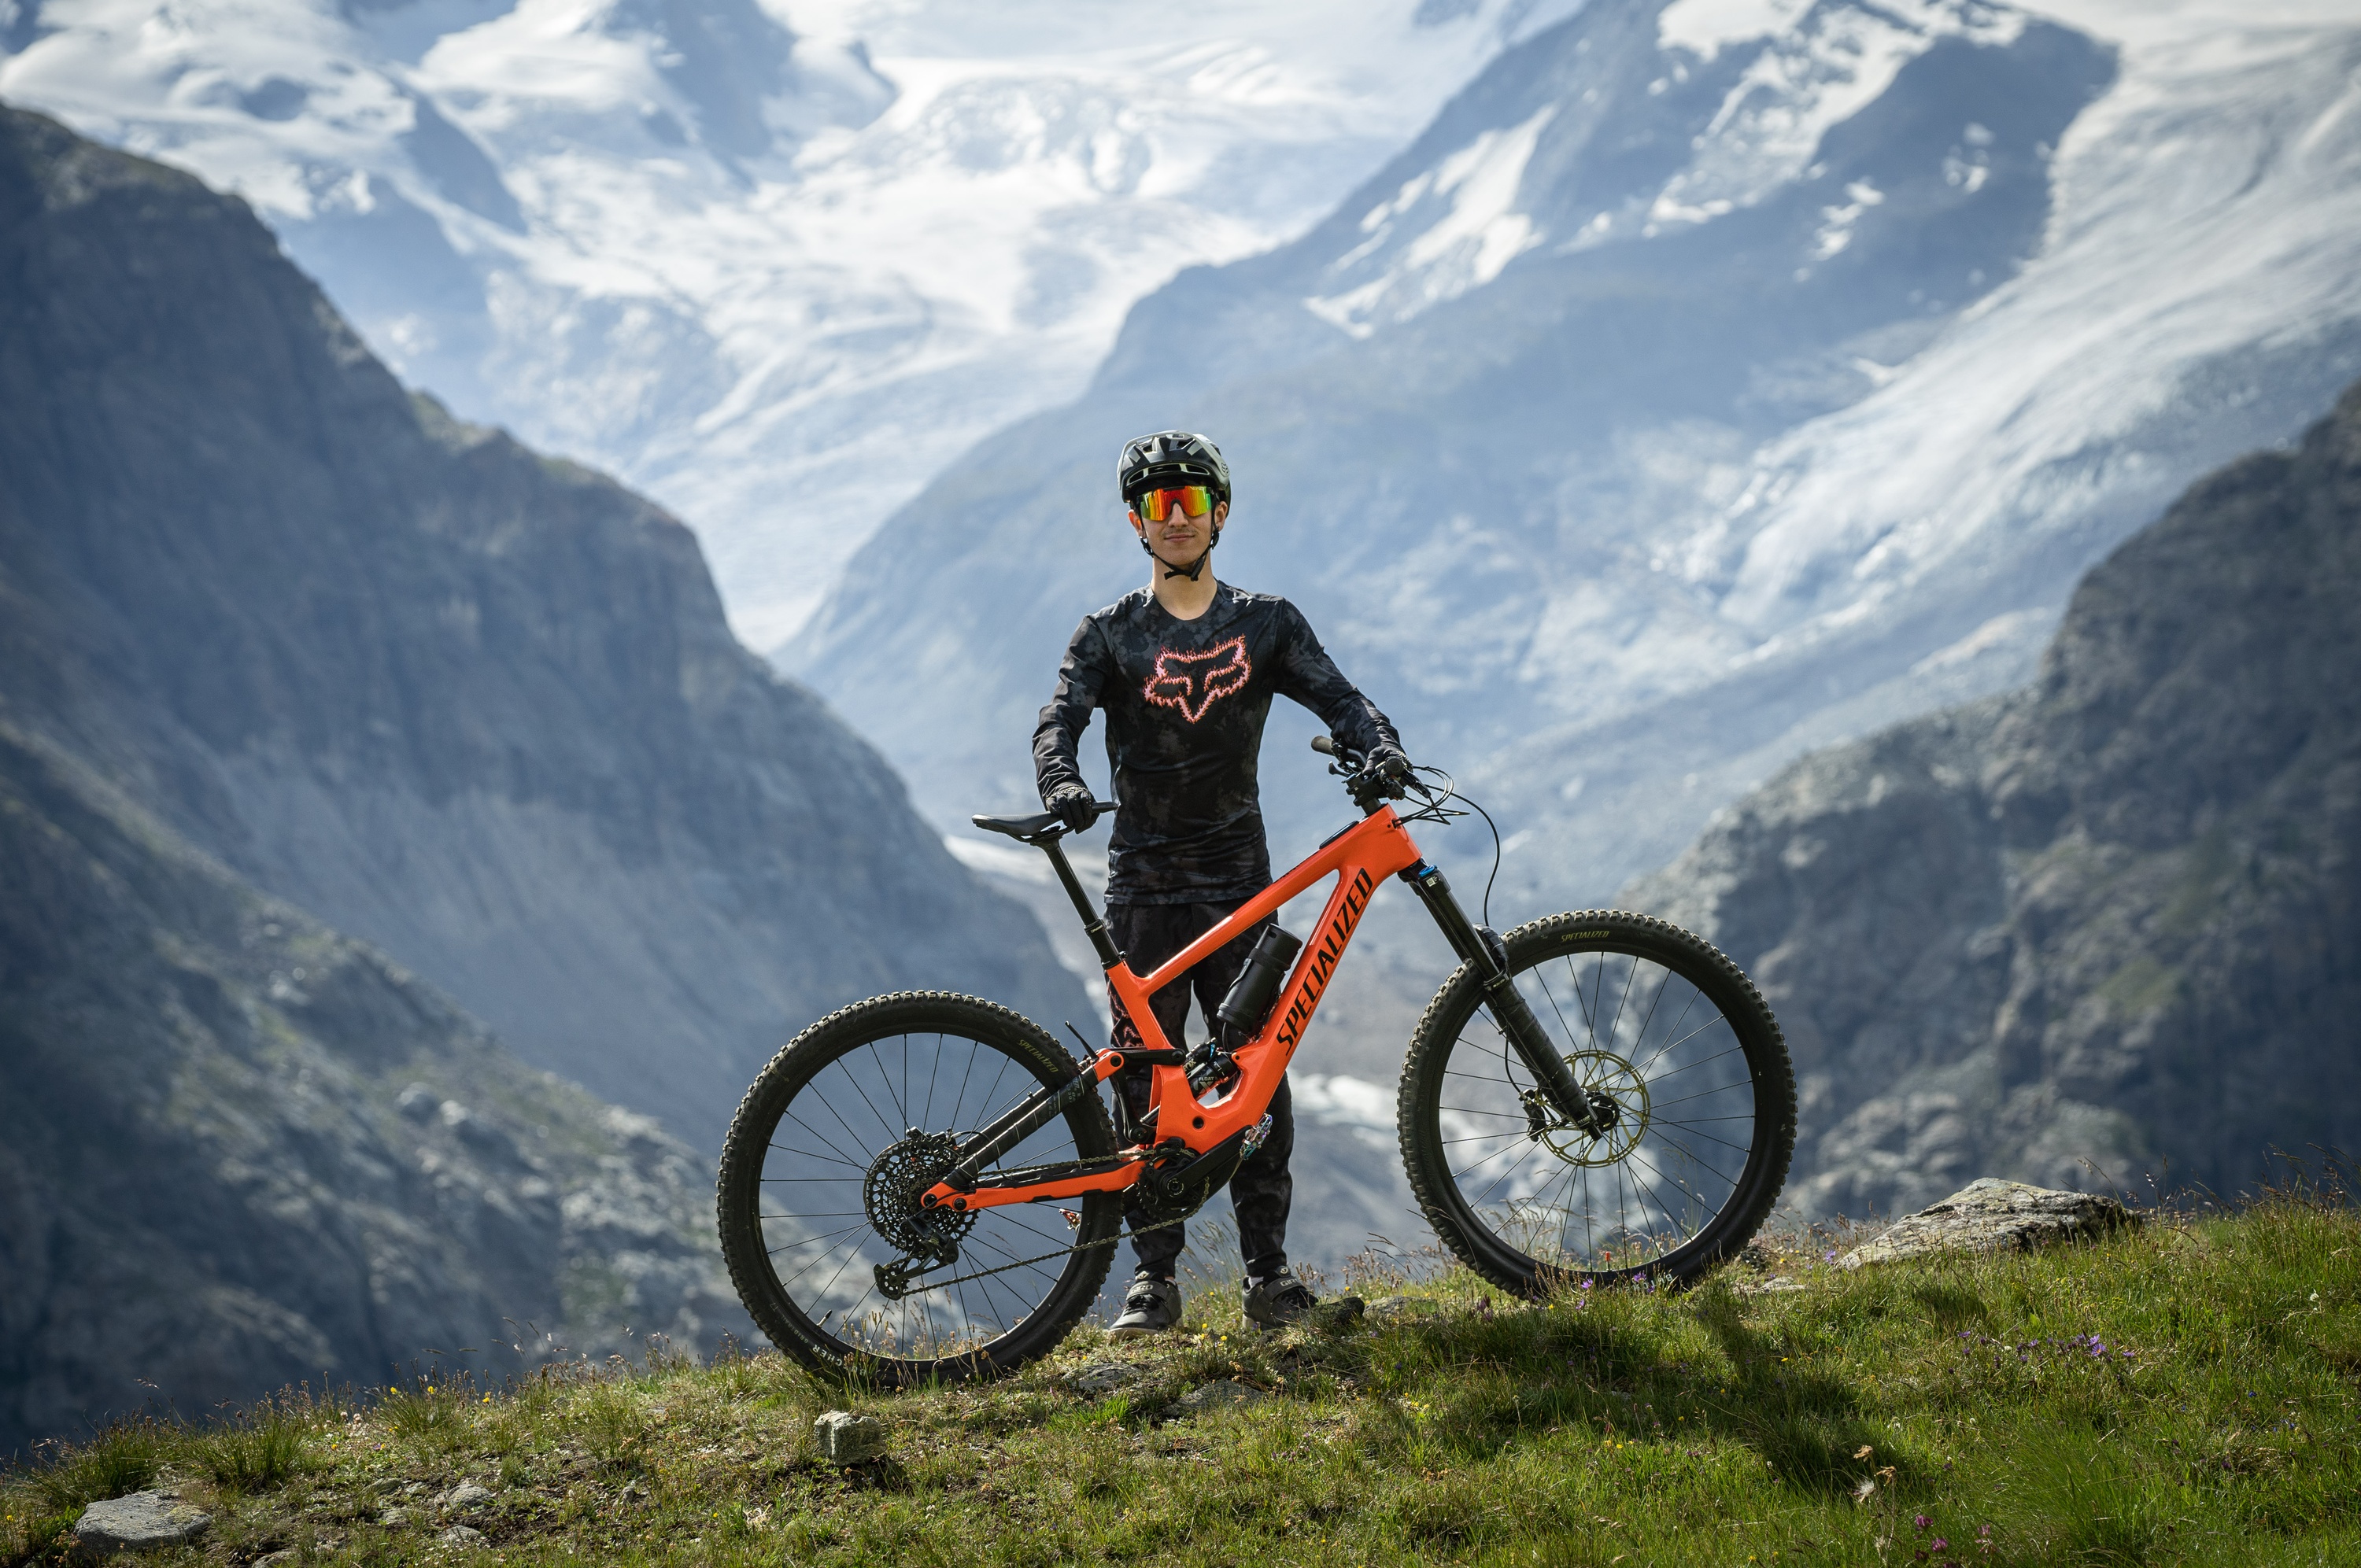 Bikearenazermatt_Leonardo_Matterhorn_Biking_Bikeshop_Zermatt